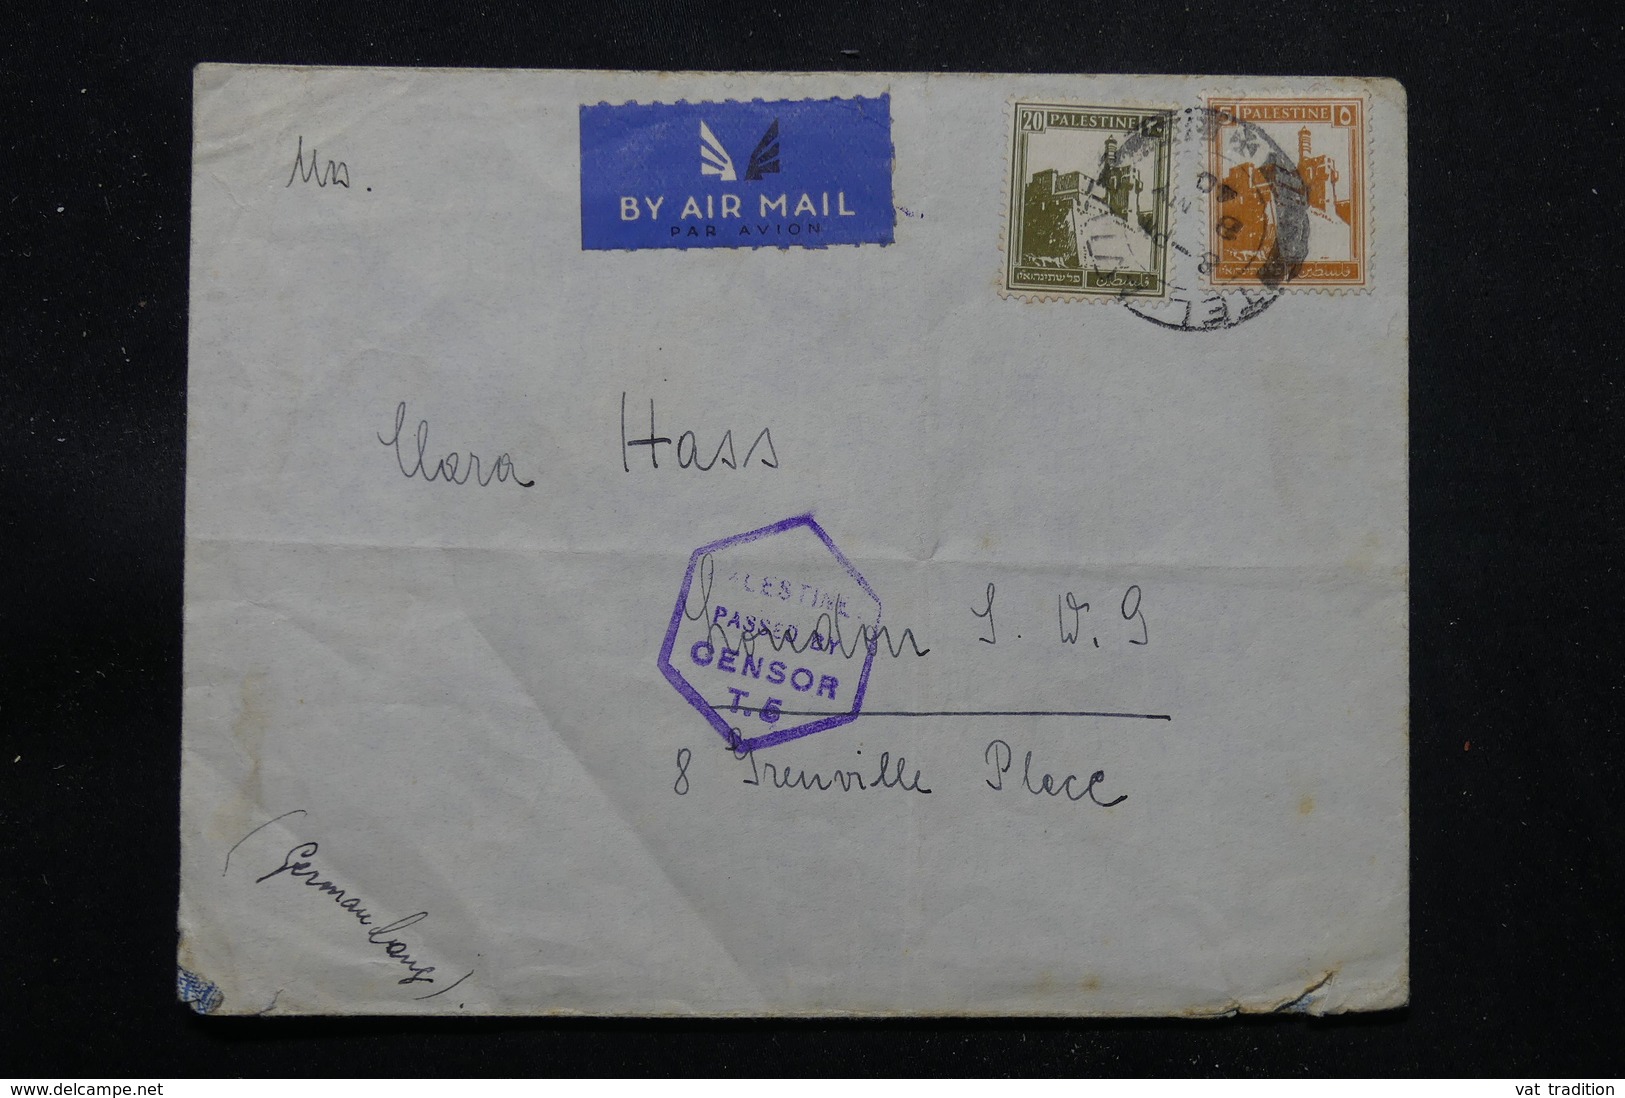 PALESTINE - Enveloppe De Tel Aviv En 1940 Pour Londres Avec Cachet De Censure, Affranchissement Plaisant - L 57652 - Palestina